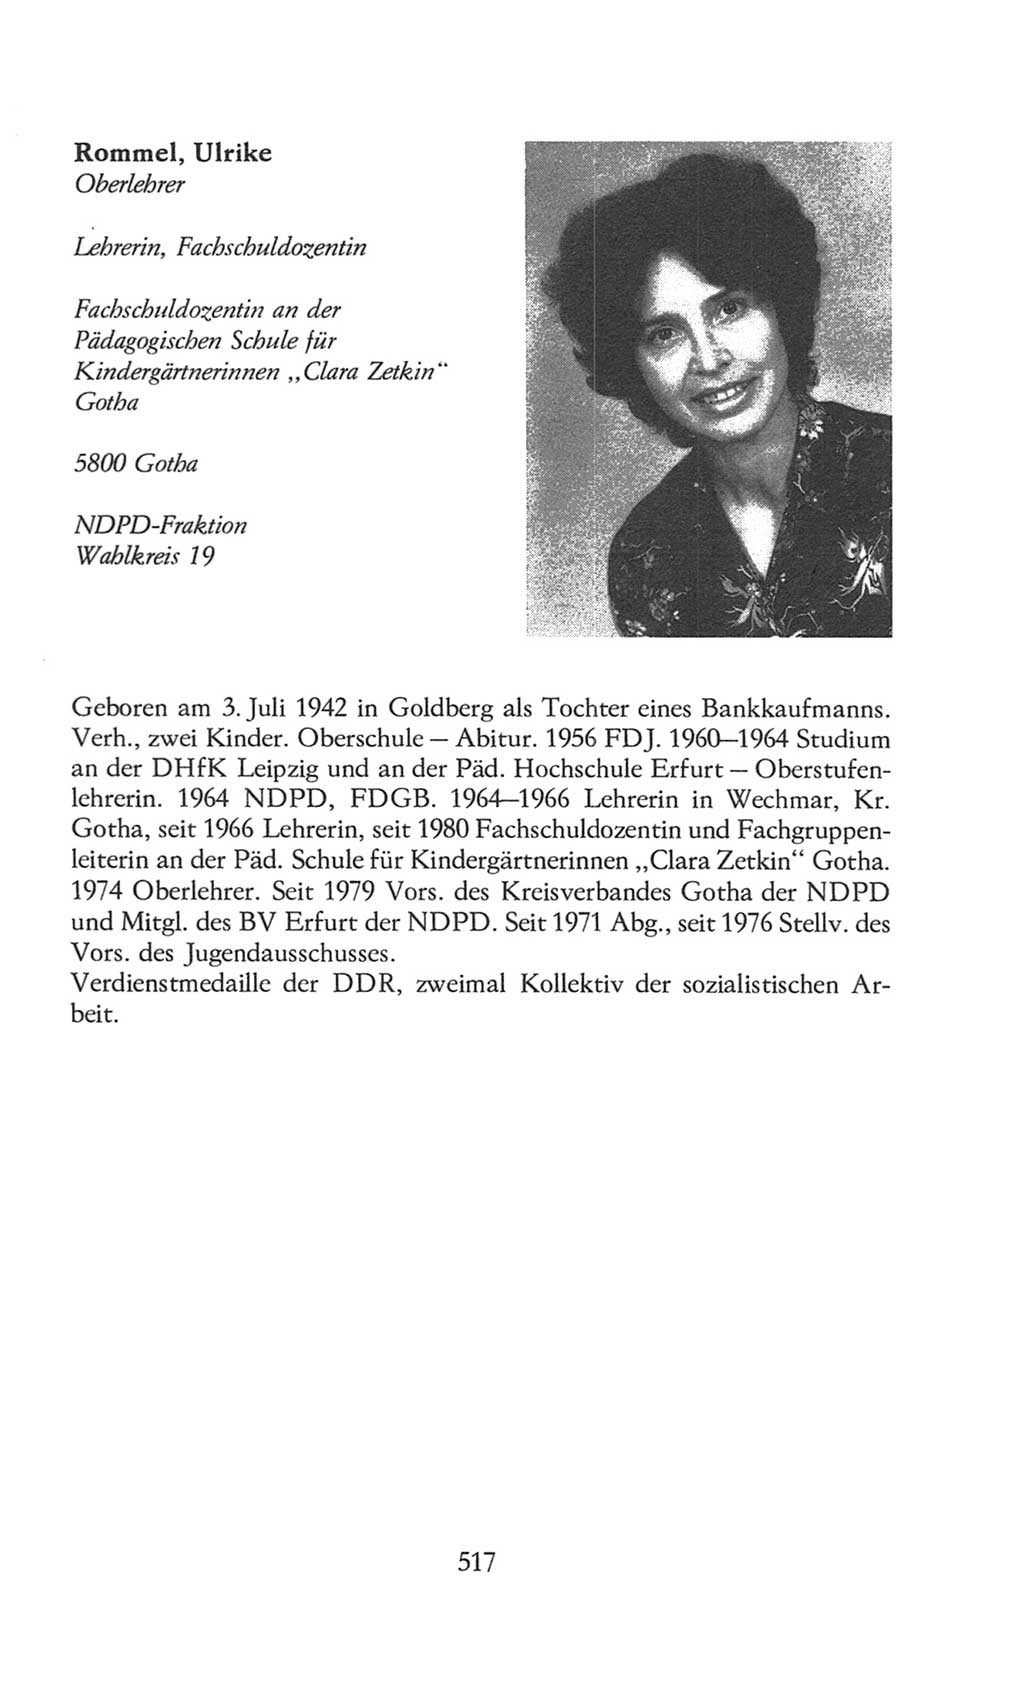 Volkskammer (VK) der Deutschen Demokratischen Republik (DDR), 8. Wahlperiode 1981-1986, Seite 517 (VK. DDR 8. WP. 1981-1986, S. 517)